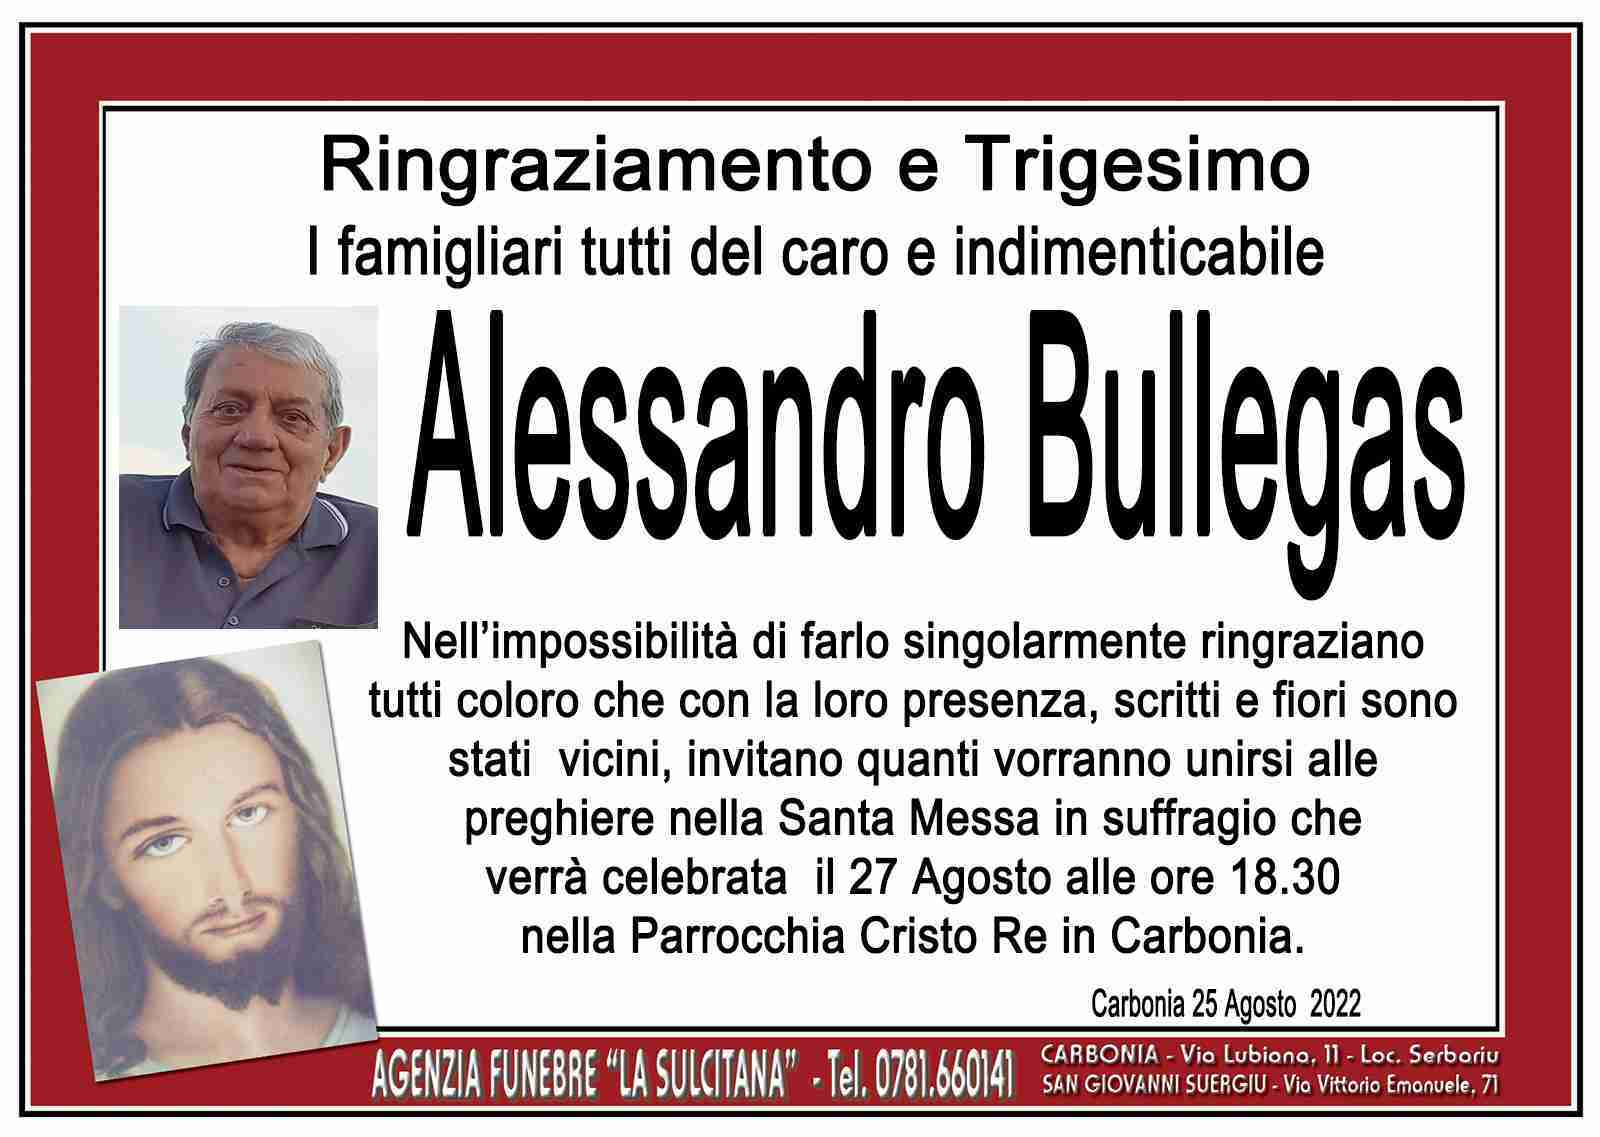 Alessandro Bullegas